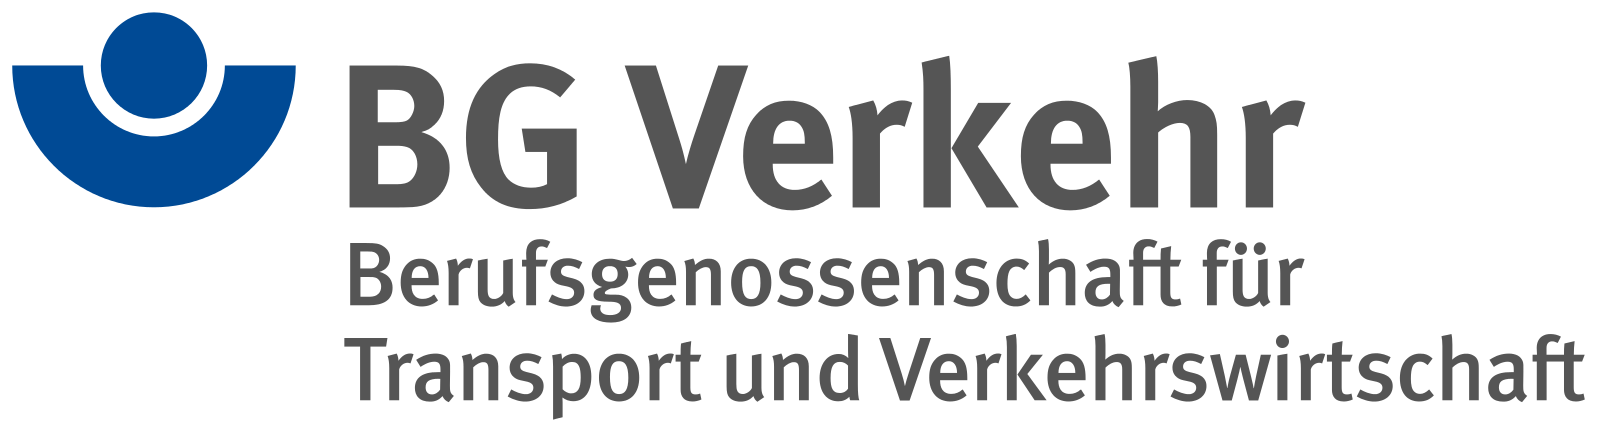 Berufsgenossenschaft_für_Transport_und_Verkehrswirtschaft_logo.svg